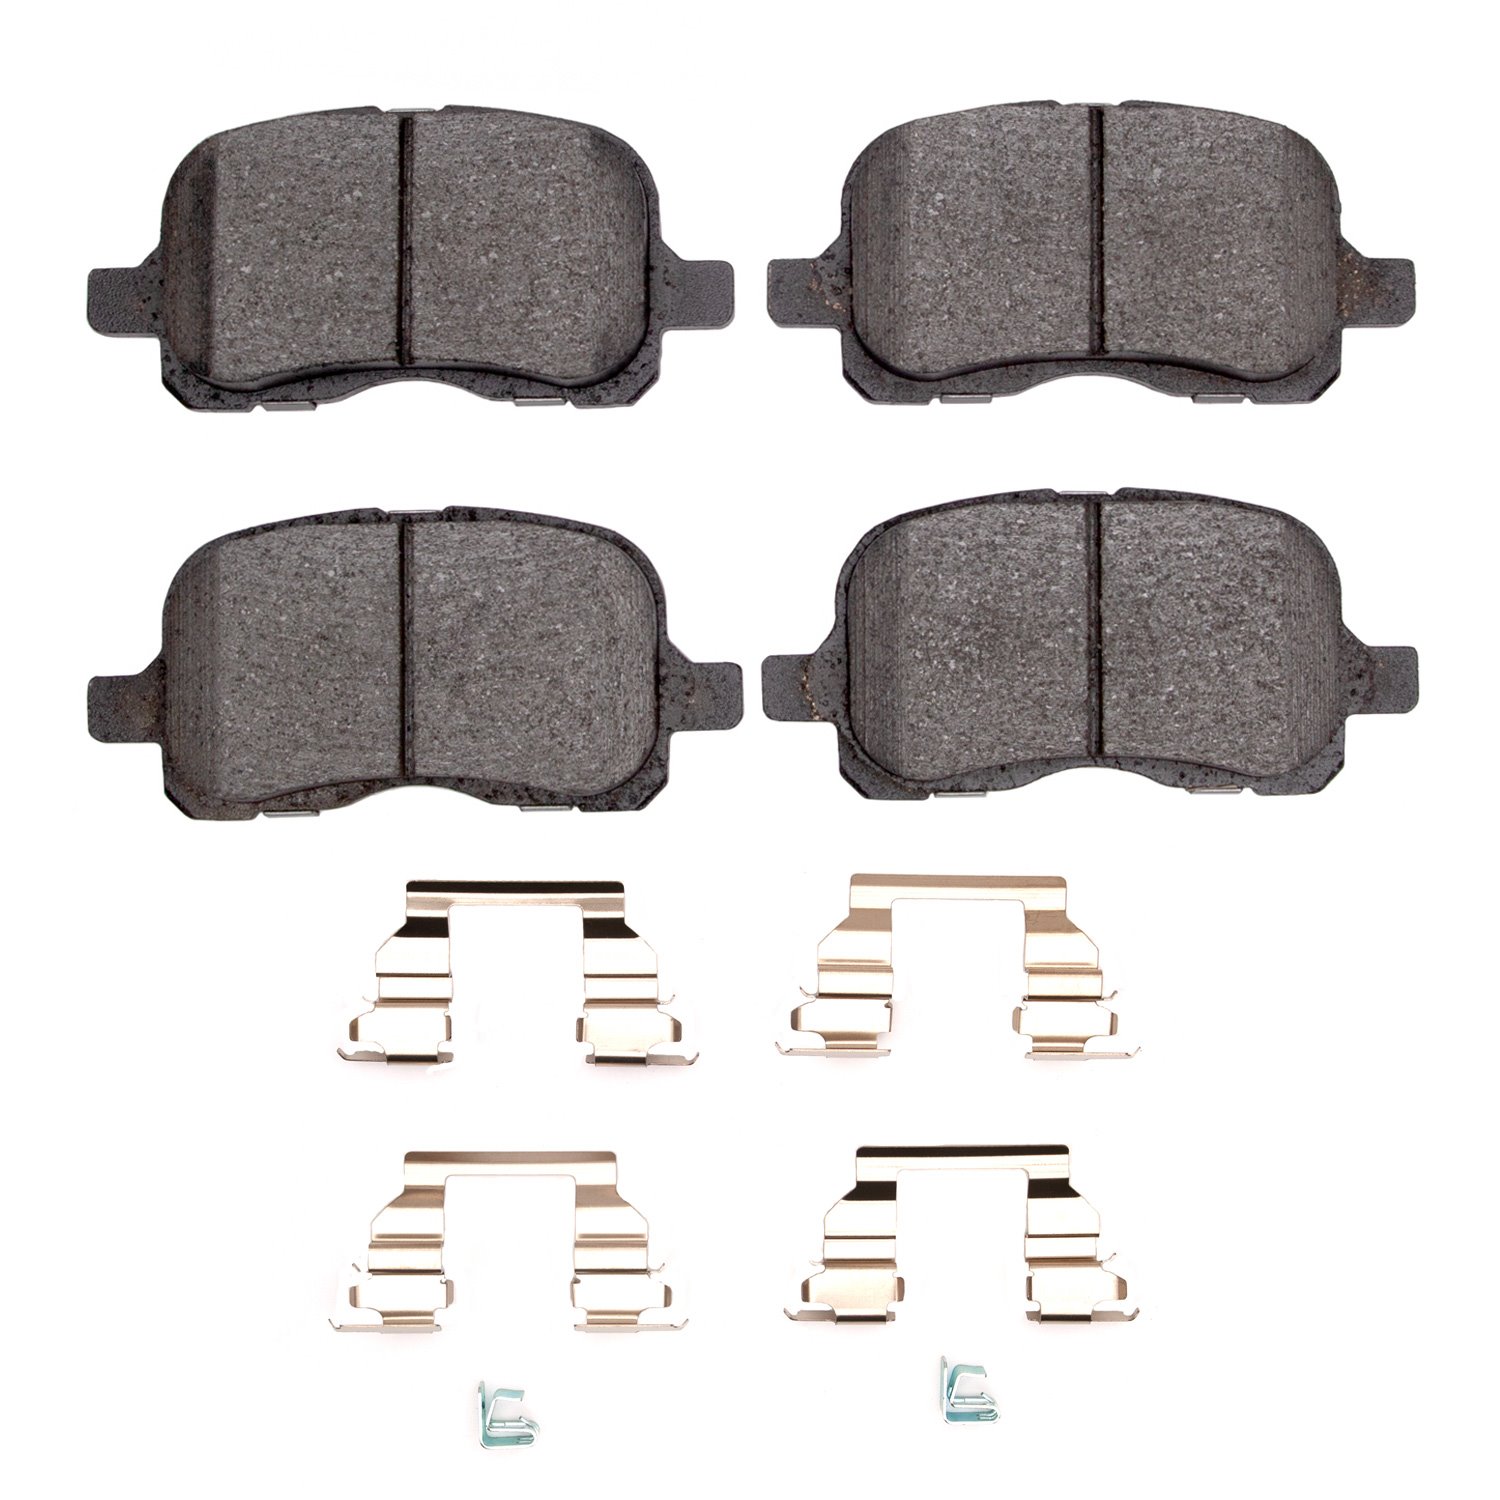 Ceramic Brake Pads & Hardware Kit, 1998-2002 Fits Multiple Makes/Models, Position: Front